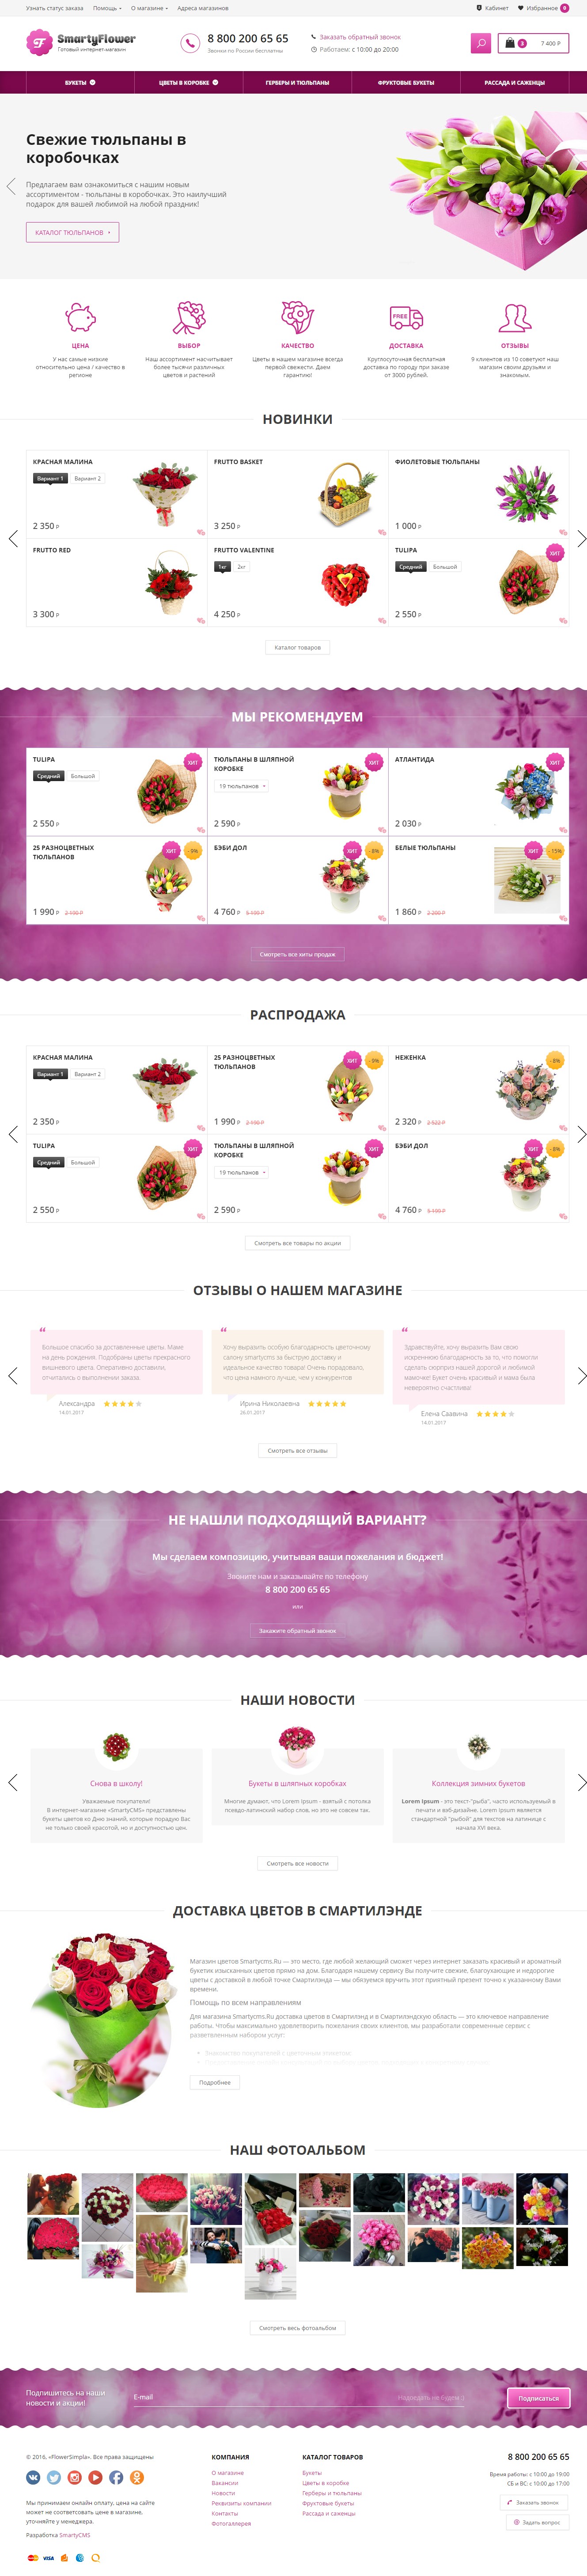 Качественный интернет-магазин цветов